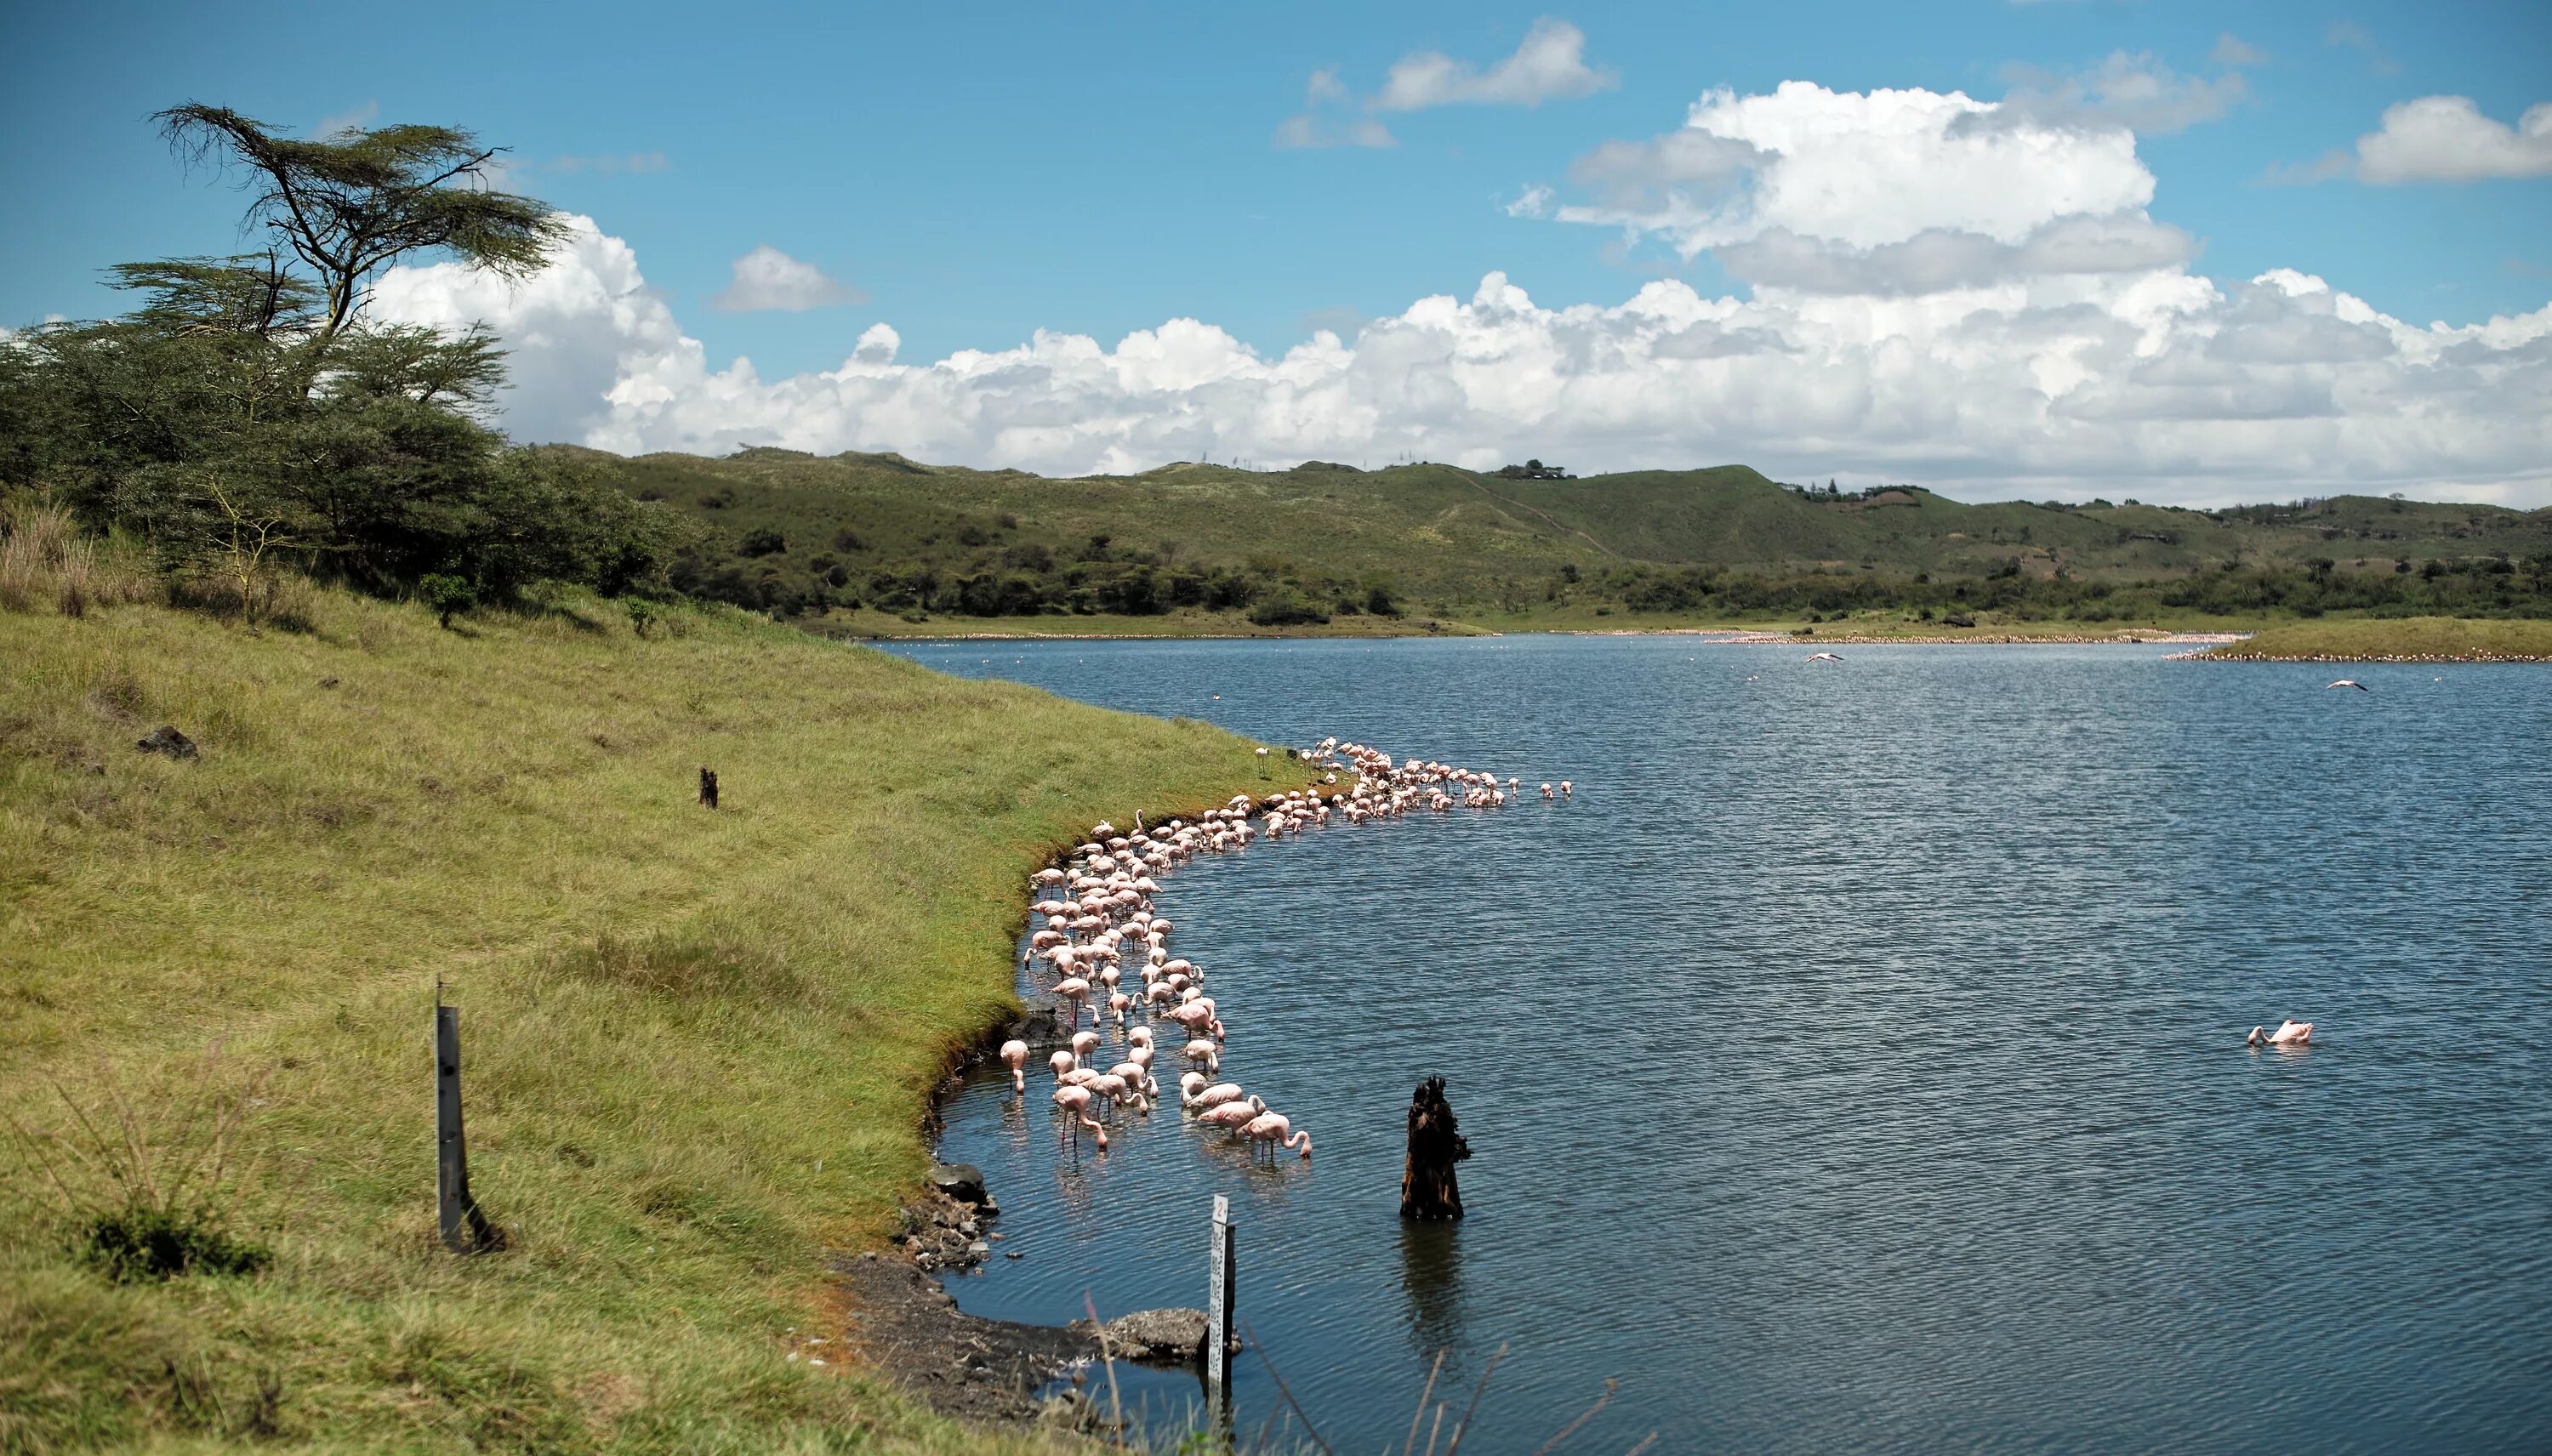 Танзания озеро Танганьика. Озеро Ньяса в Танзании. Озеро Танганьика национальный парк. Воды восточной африки